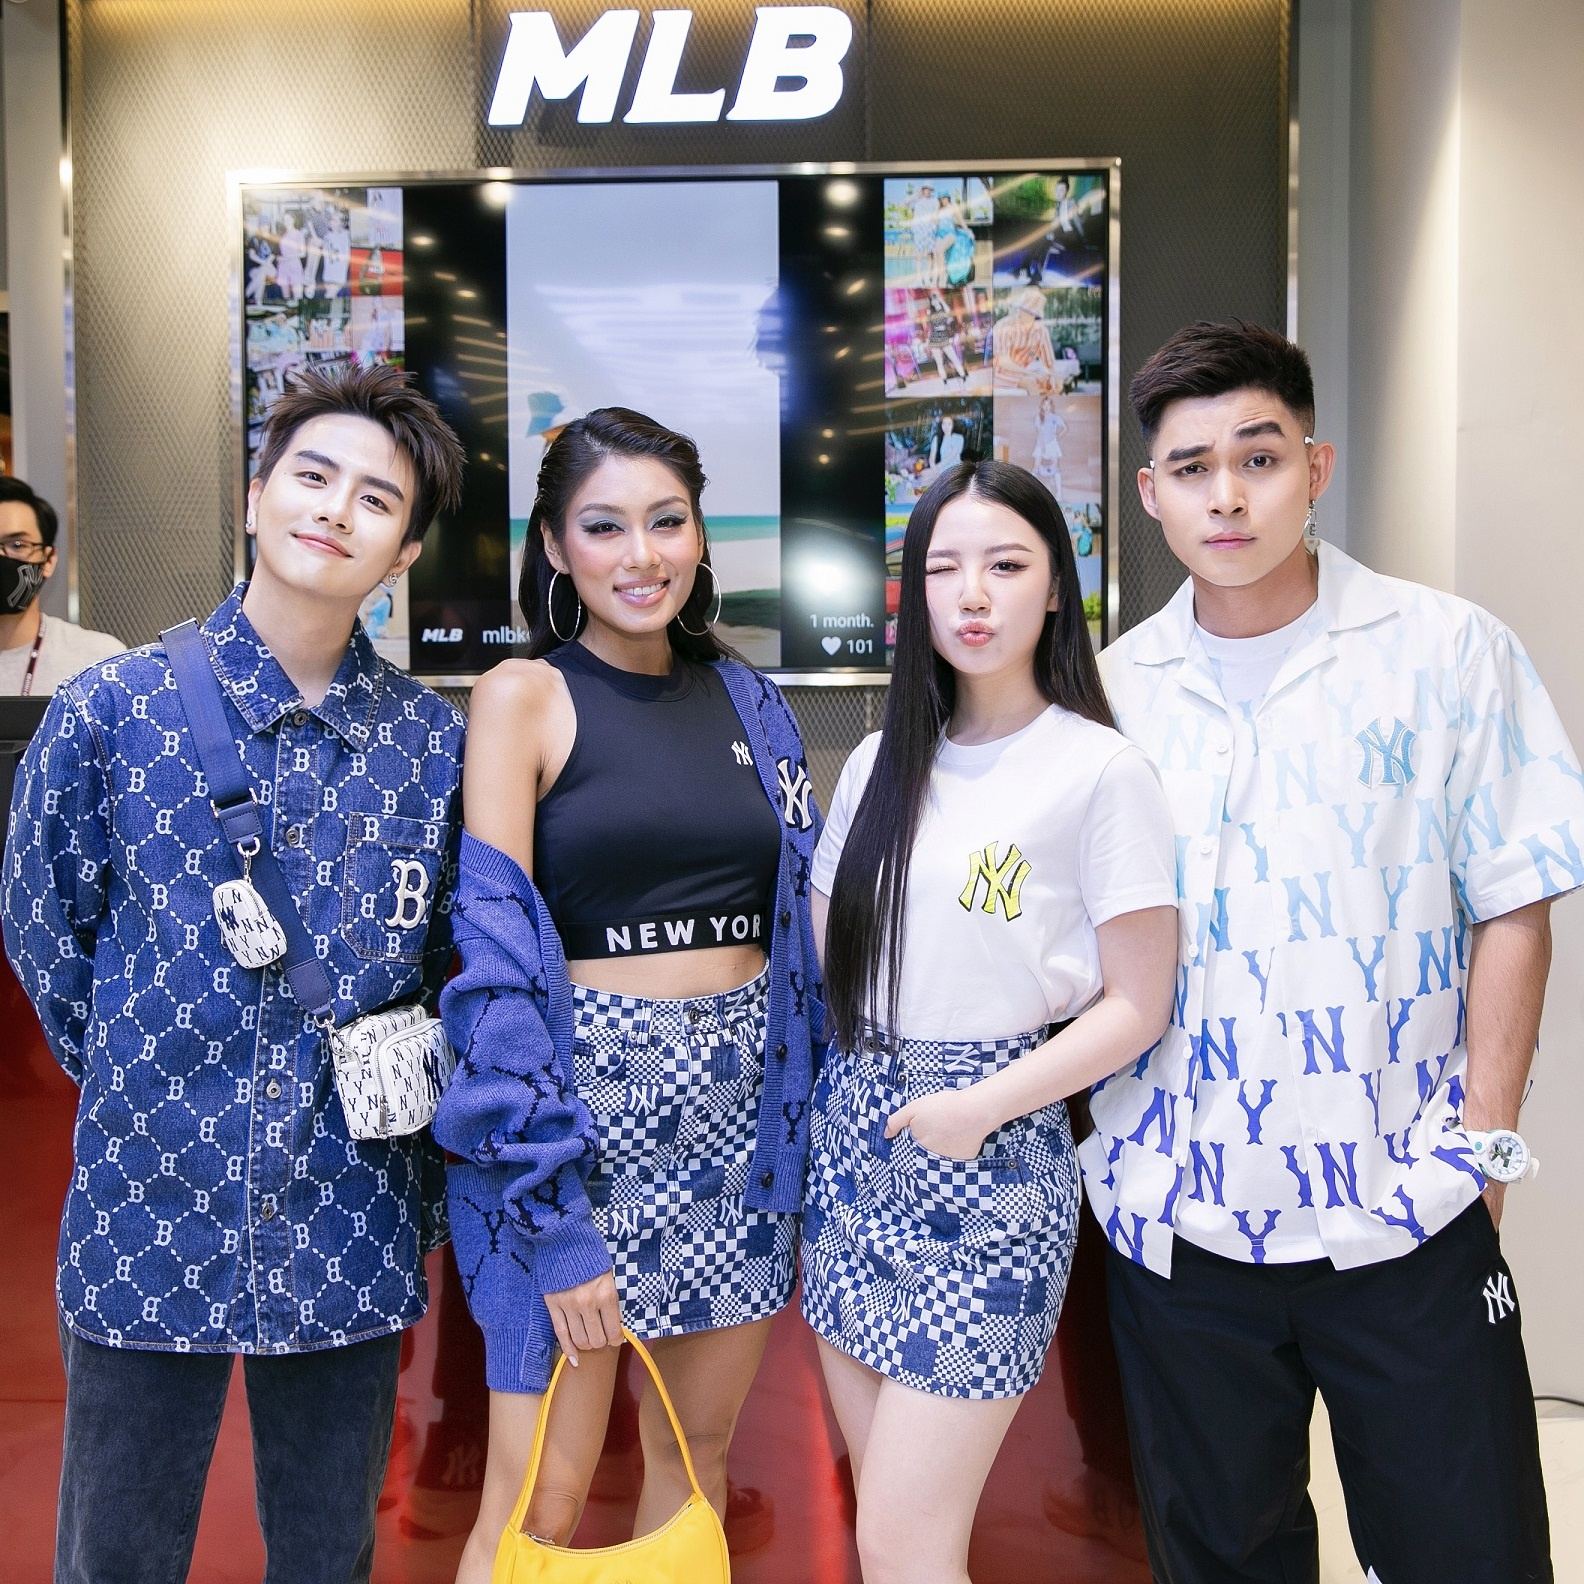 Thương hiệu MLB ra mắt cửa hàng đầu tiên tại Thành phố đáng sống nhất  Đà  Nẵng  PHONG CÁCH SỐNG CỦA ĐÀN ÔNG  MENANDLIFEVN